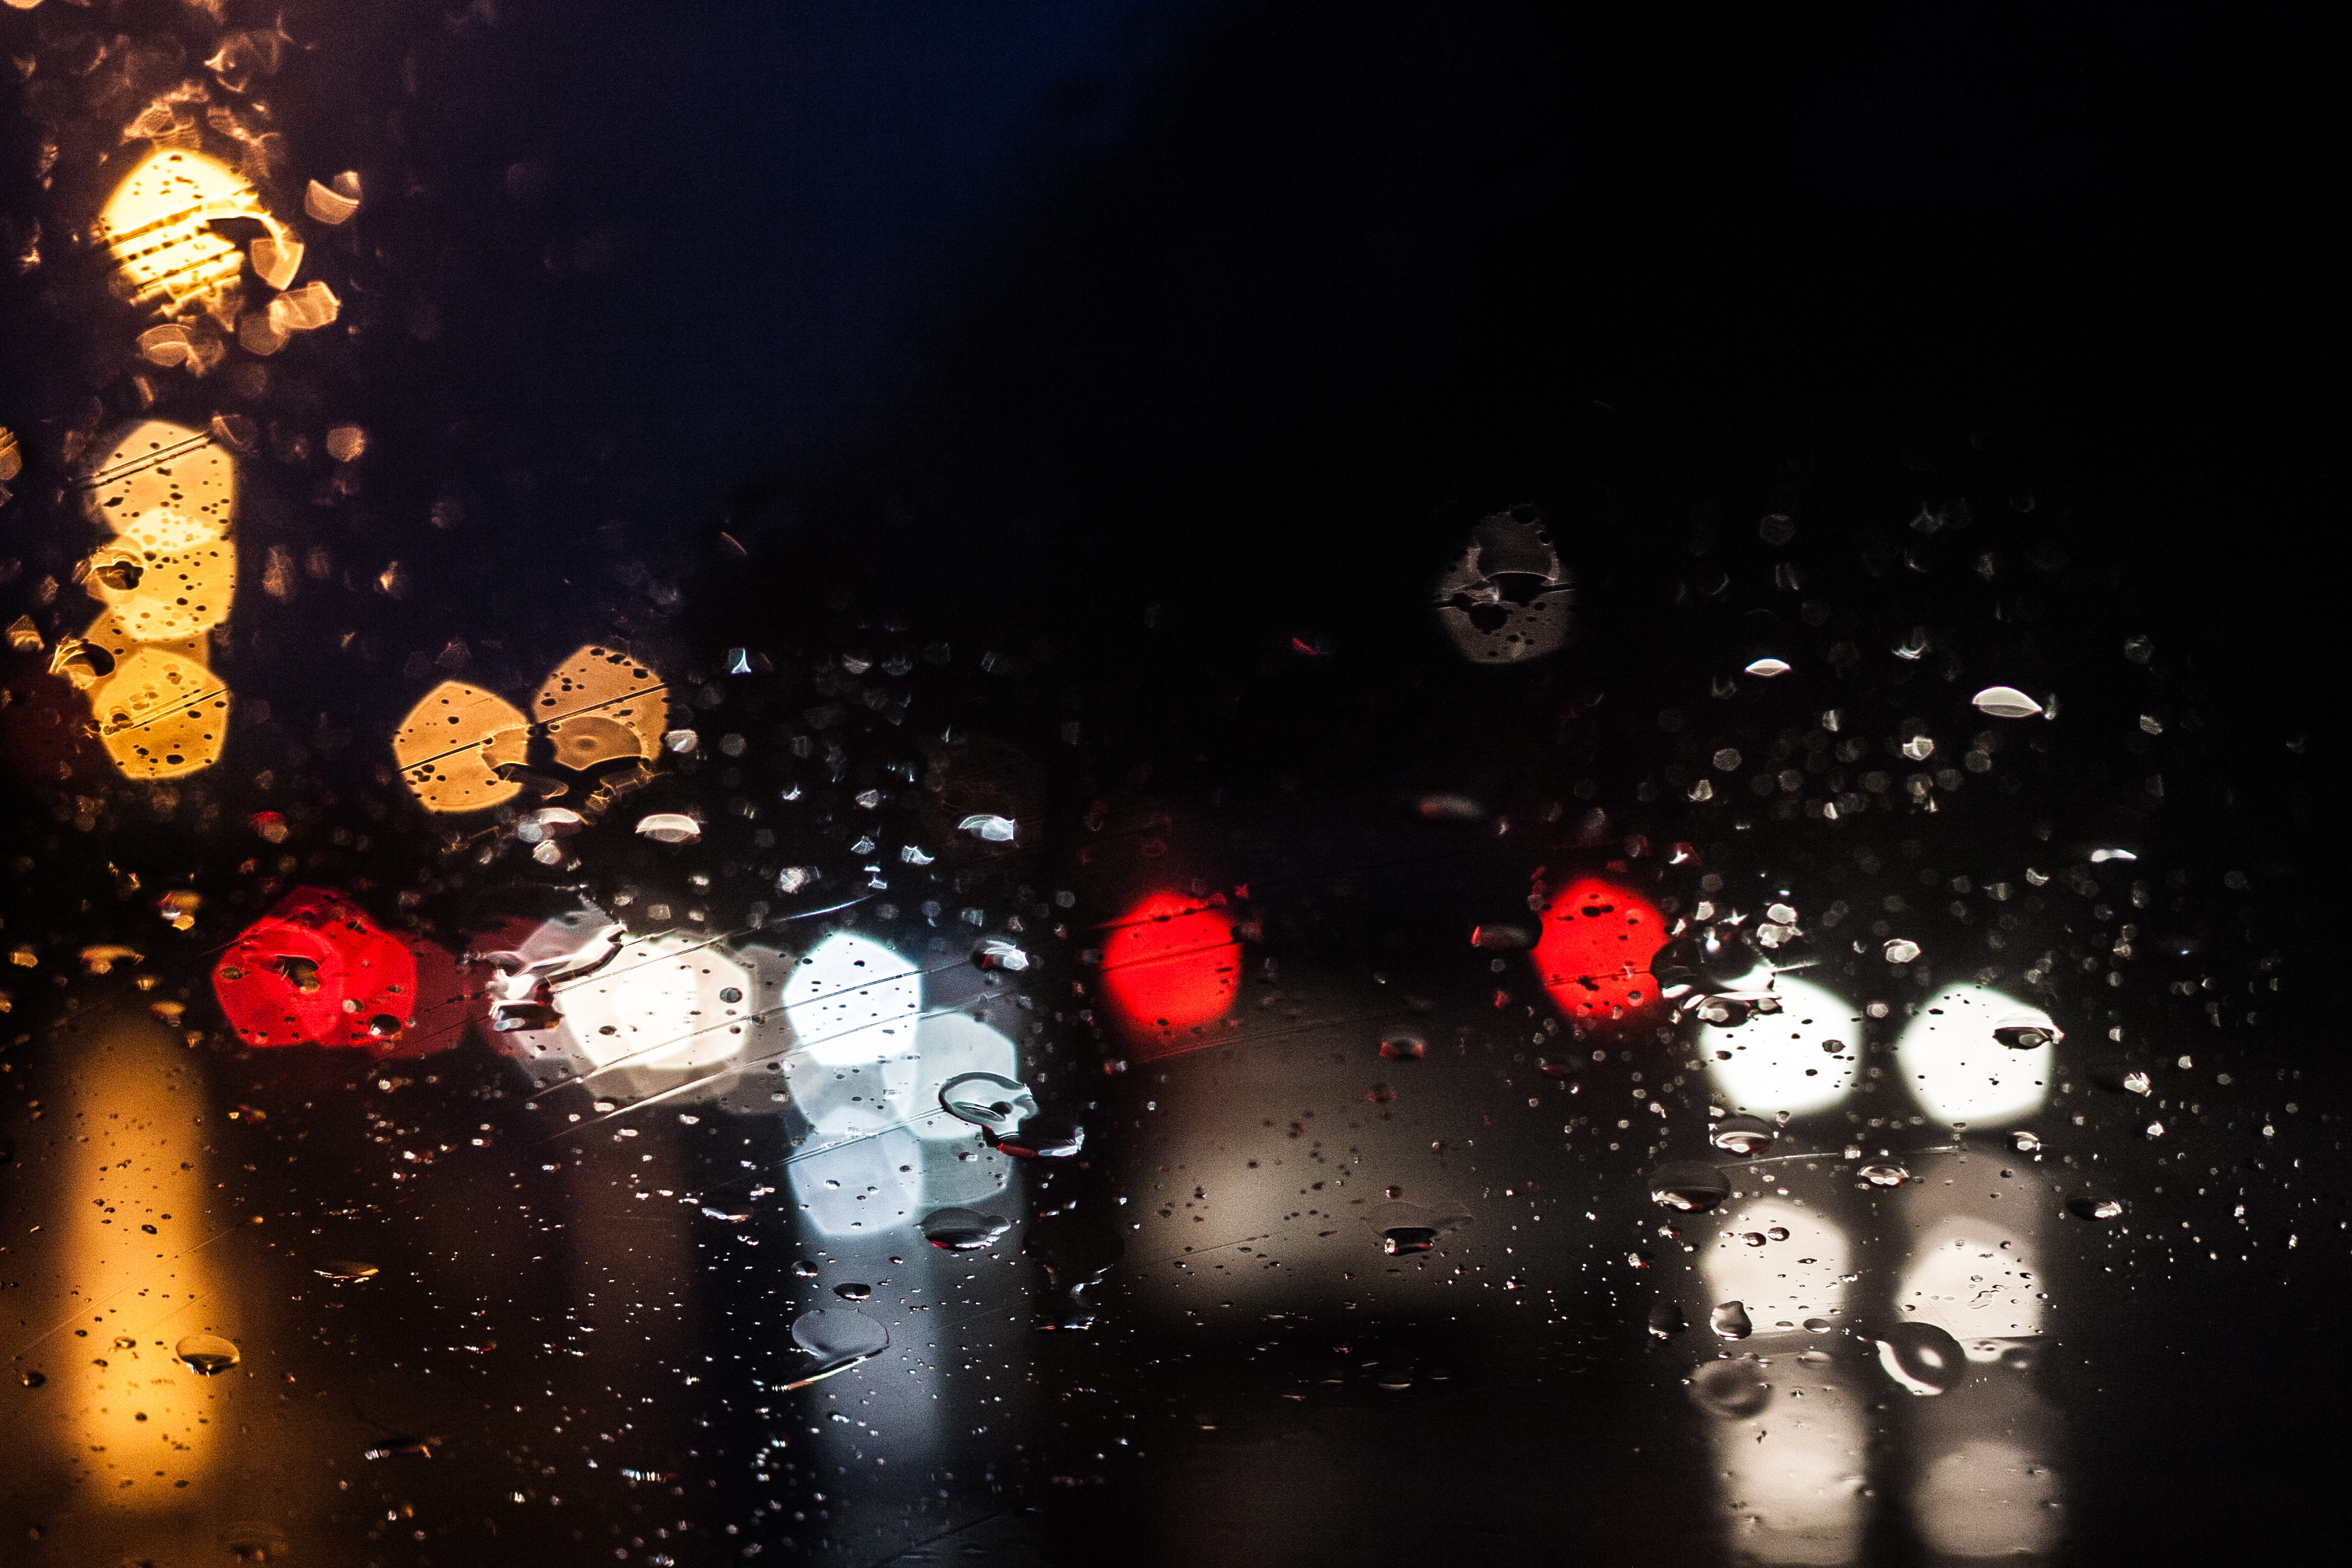 lights at night through a wet car windscreen